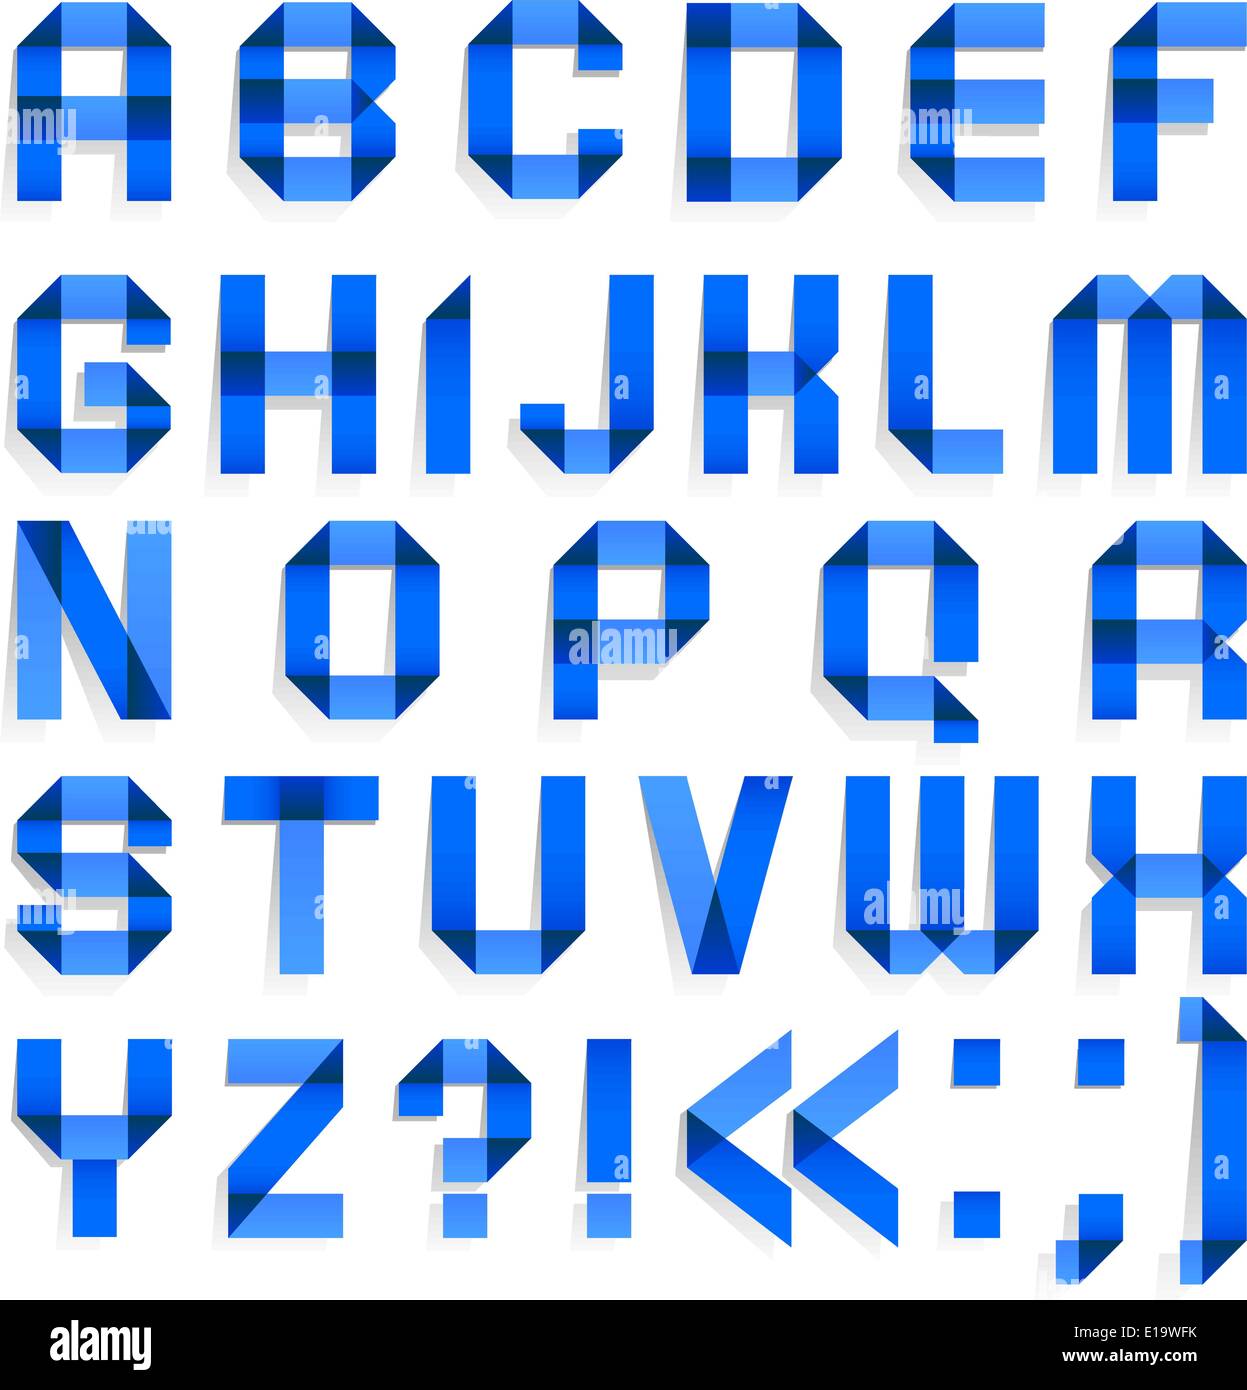 Alphabet von farbigem Papier - blaue Briefe gefaltet. (A, B, C, D, E, F, G, H, I, J, K, L, M, N, O, P, Q, R, S, T, U, V, W, X, Y, Z). Stock Vektor